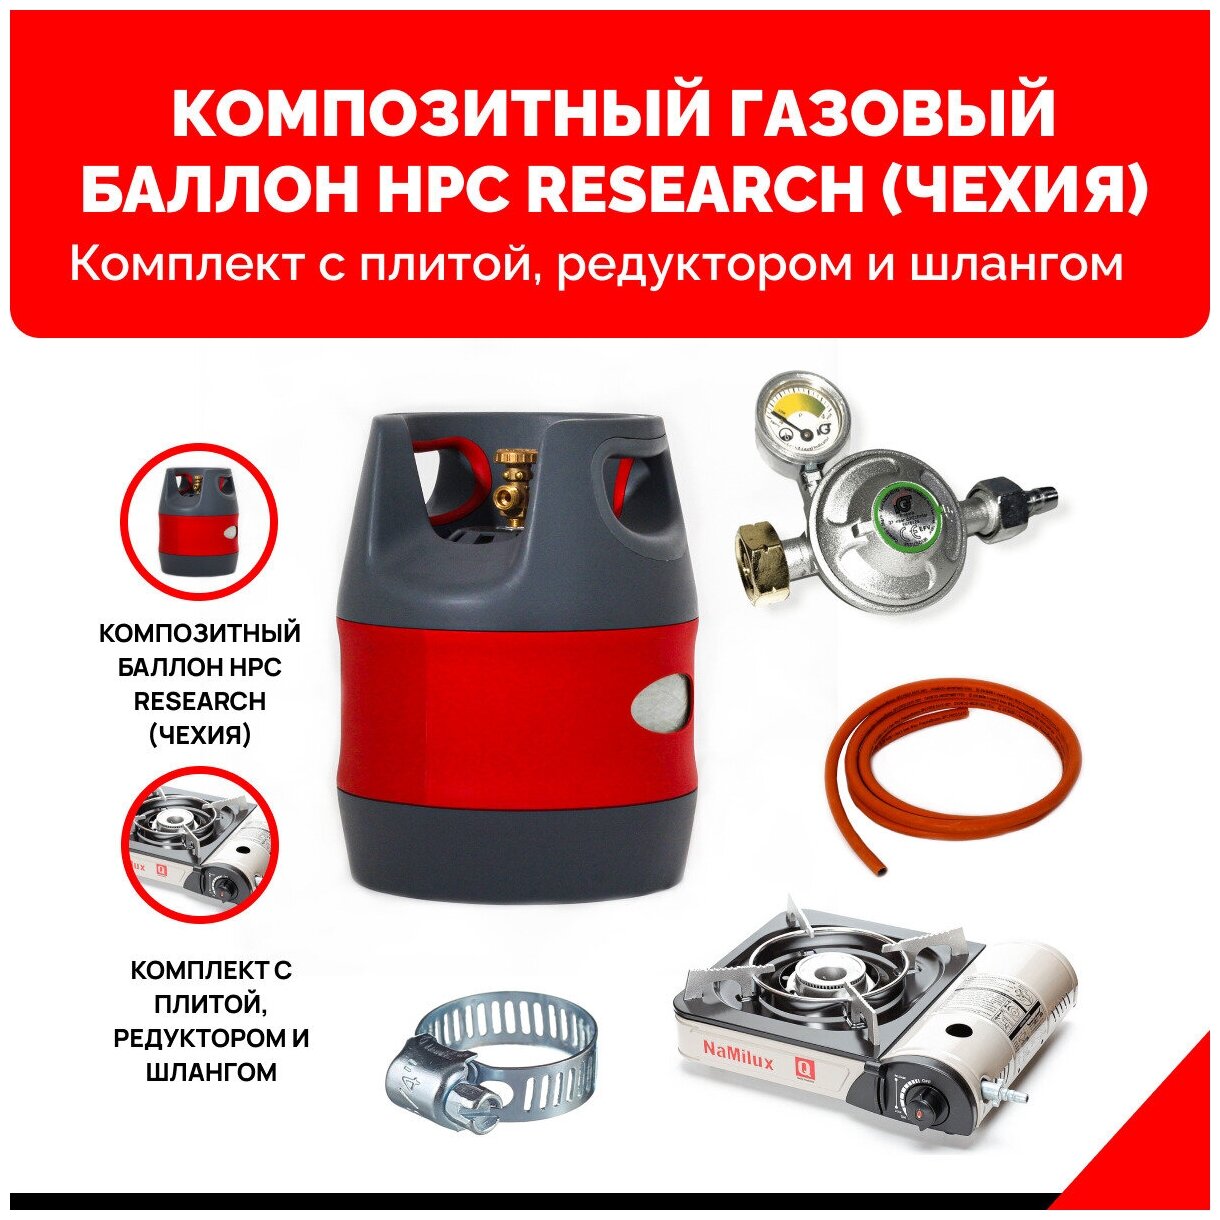 Композитный газовый баллон HPC Research (Чехия) 12,7 л. с газовой плитой NaMilux NA-161PF/2W. Комплект оптимум с редуктором и шлангом - 2 м.